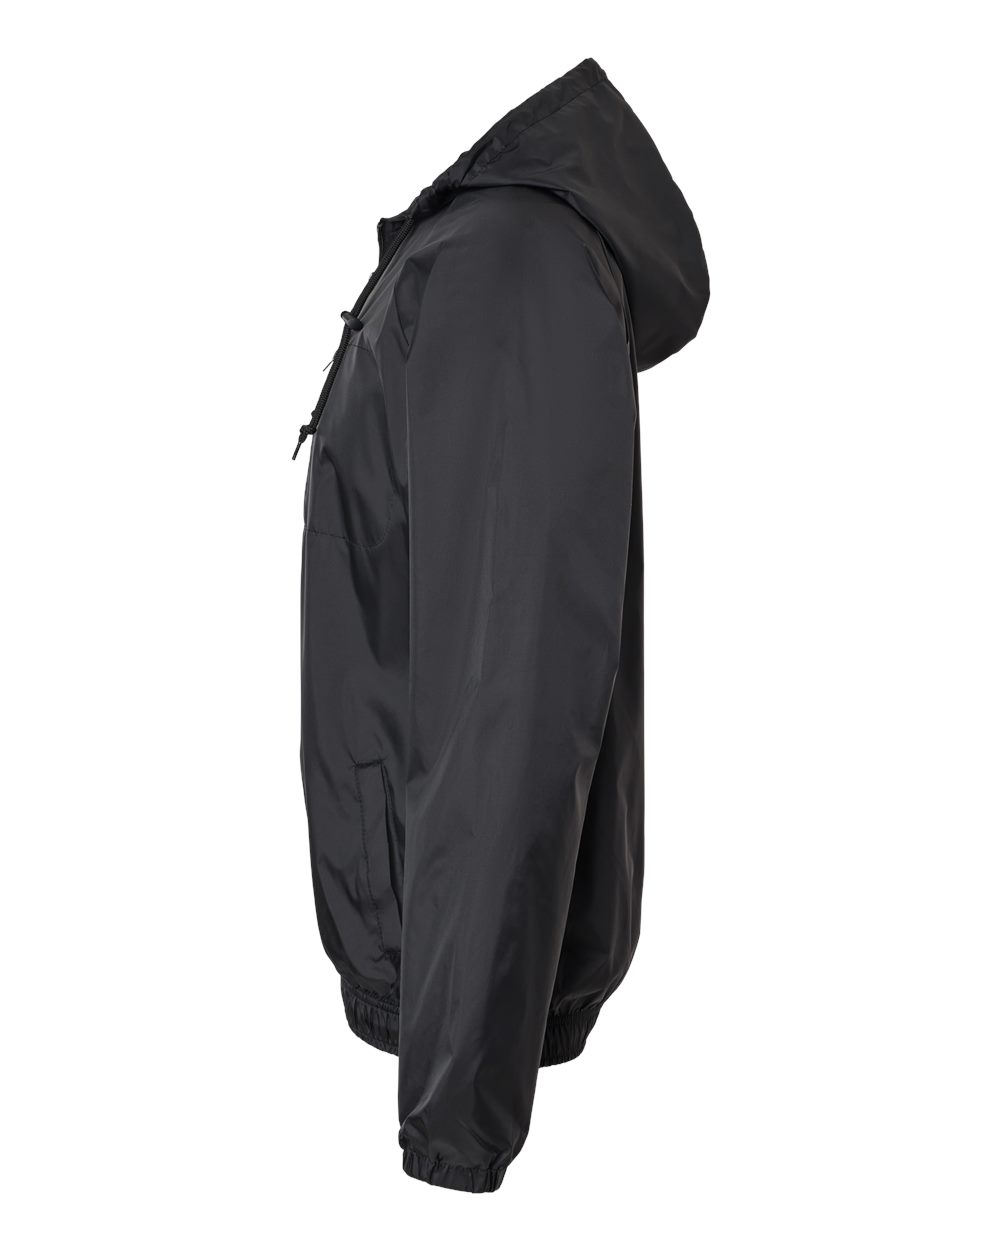 Burnside 9728 Hooded Nylon Mentor Jacket